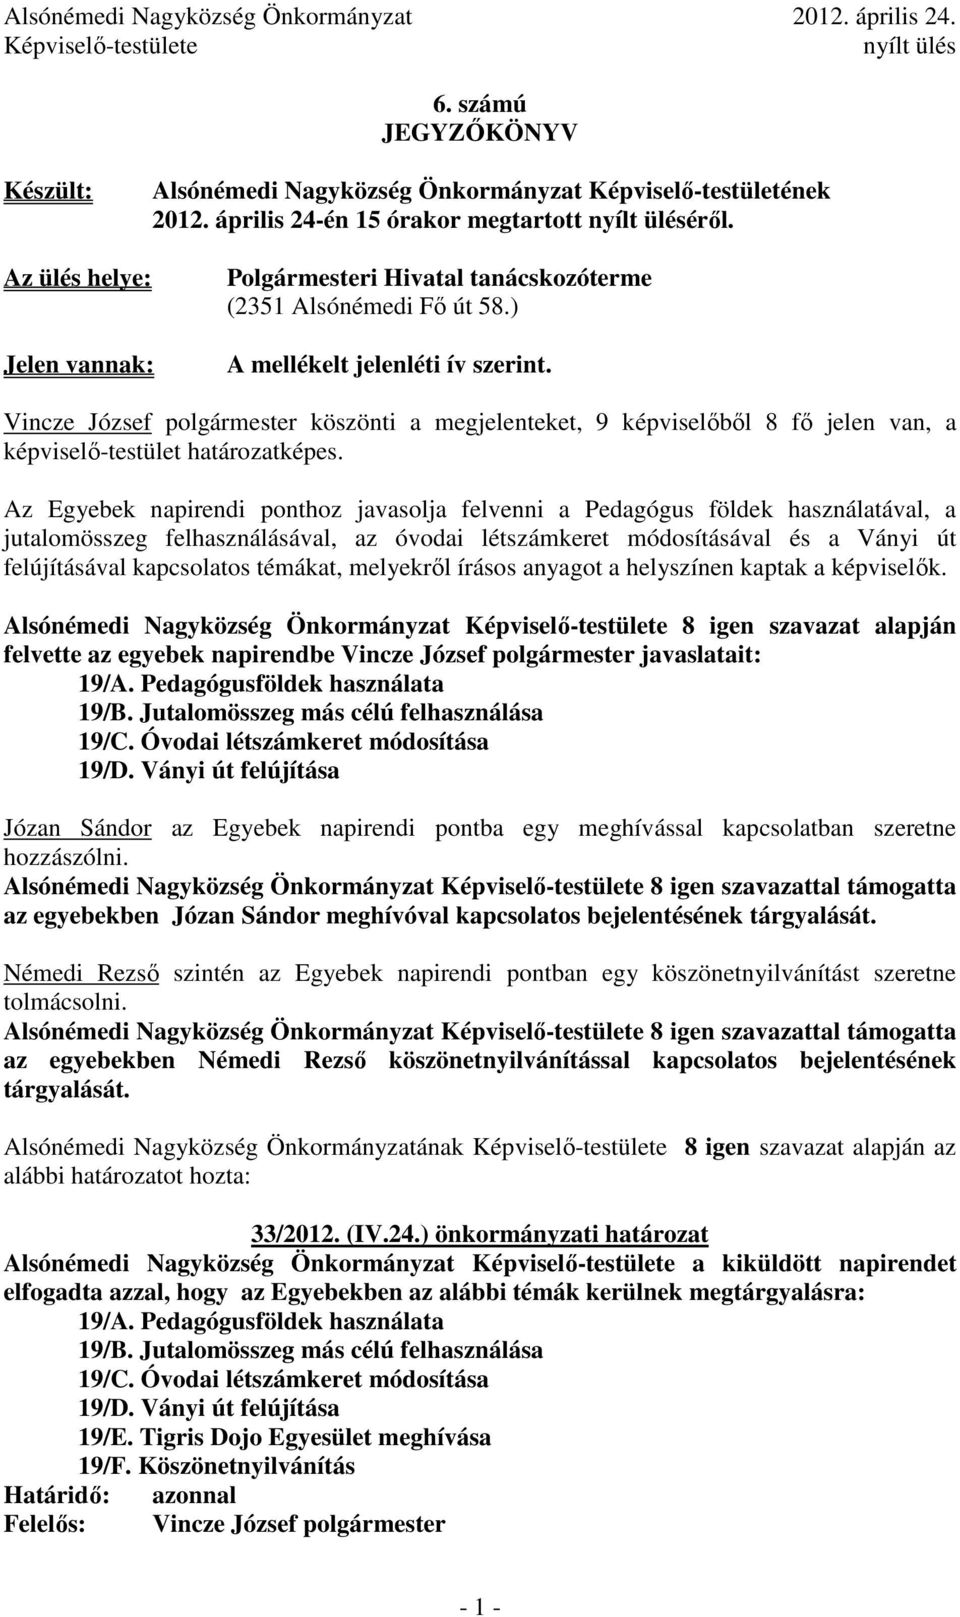 Vincze József polgármester köszönti a megjelenteket, 9 képviselıbıl 8 fı jelen van, a képviselı-testület határozatképes.